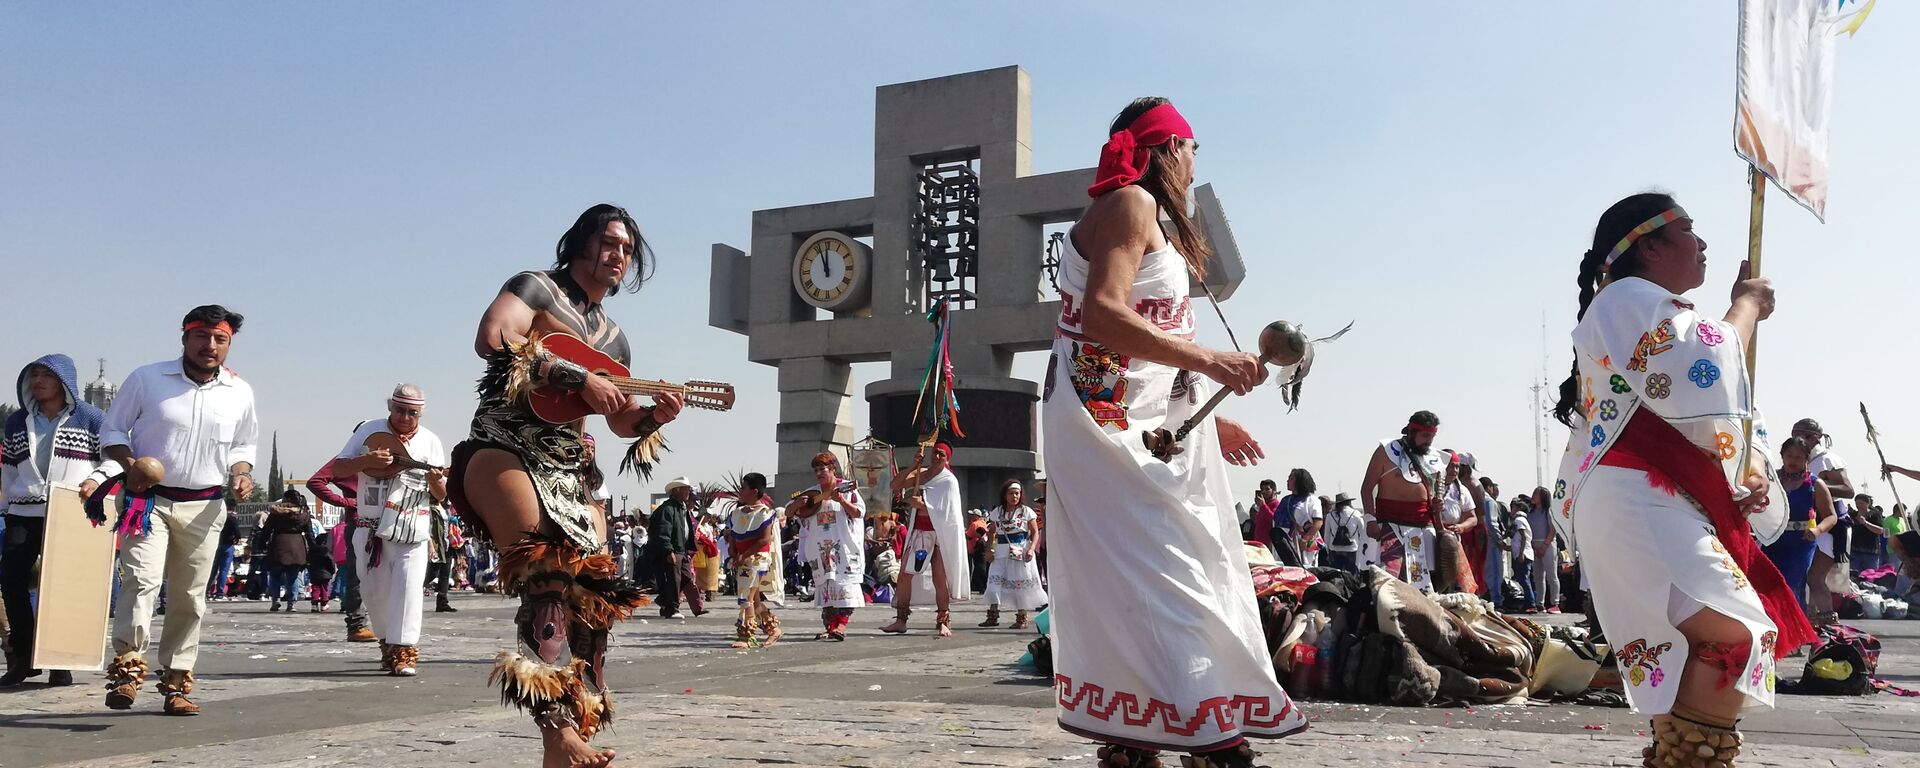 Peregrinos y danzantes: México celebra el día de la Virgen de Guadalupe - Sputnik Mundo, 1920, 27.09.2021